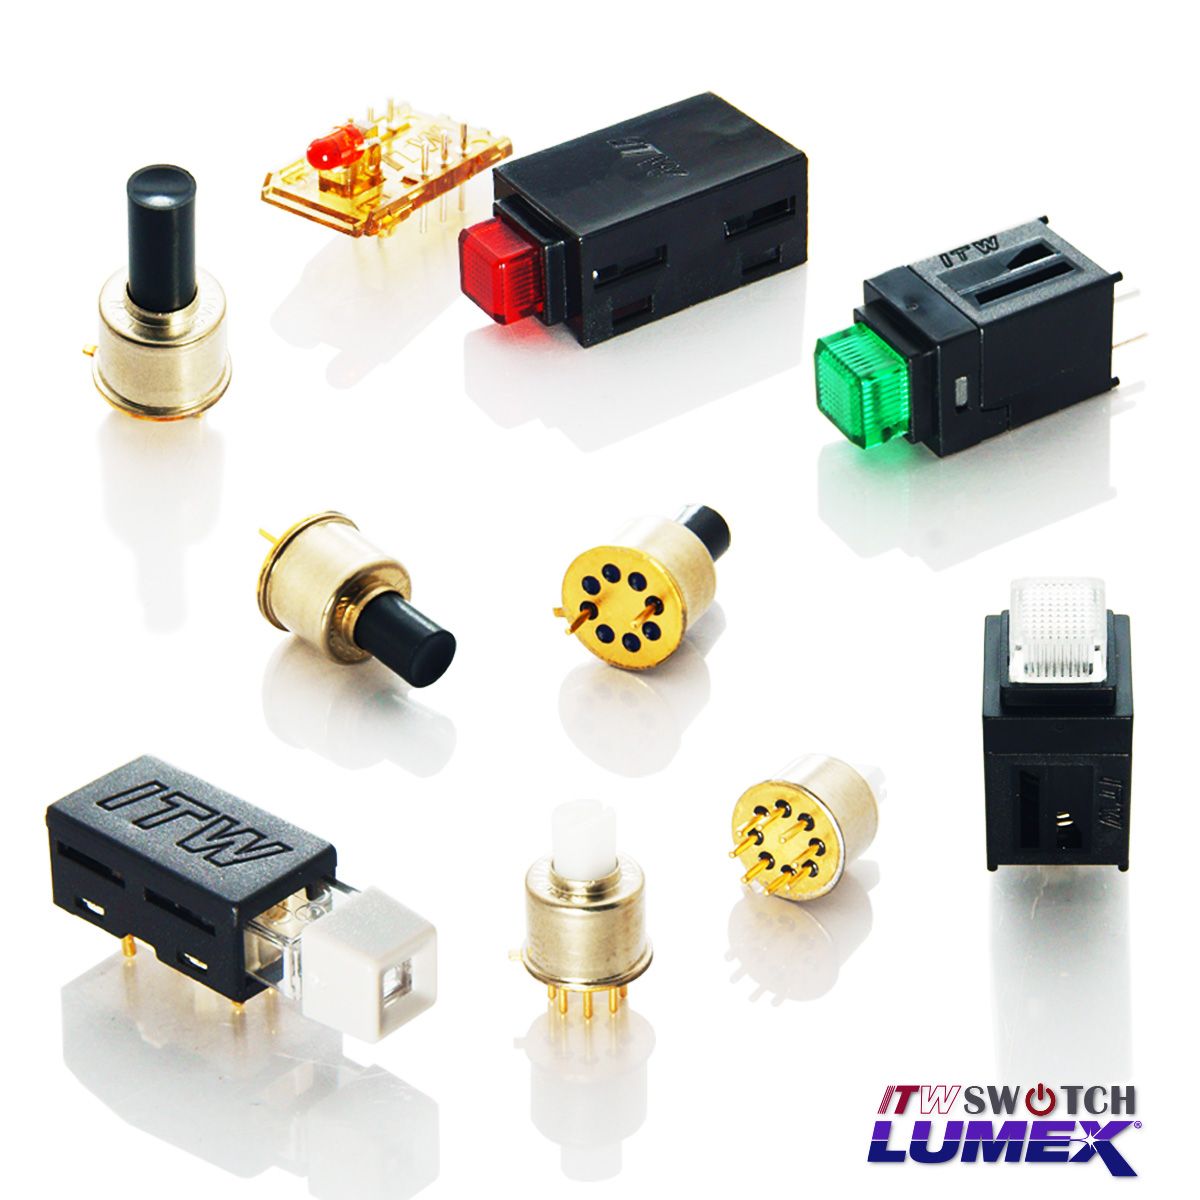 ITW Lumex Switchfournit des interrupteurs à bouton-poussoir miniatures éclairés par LED pour les applications PCBA.